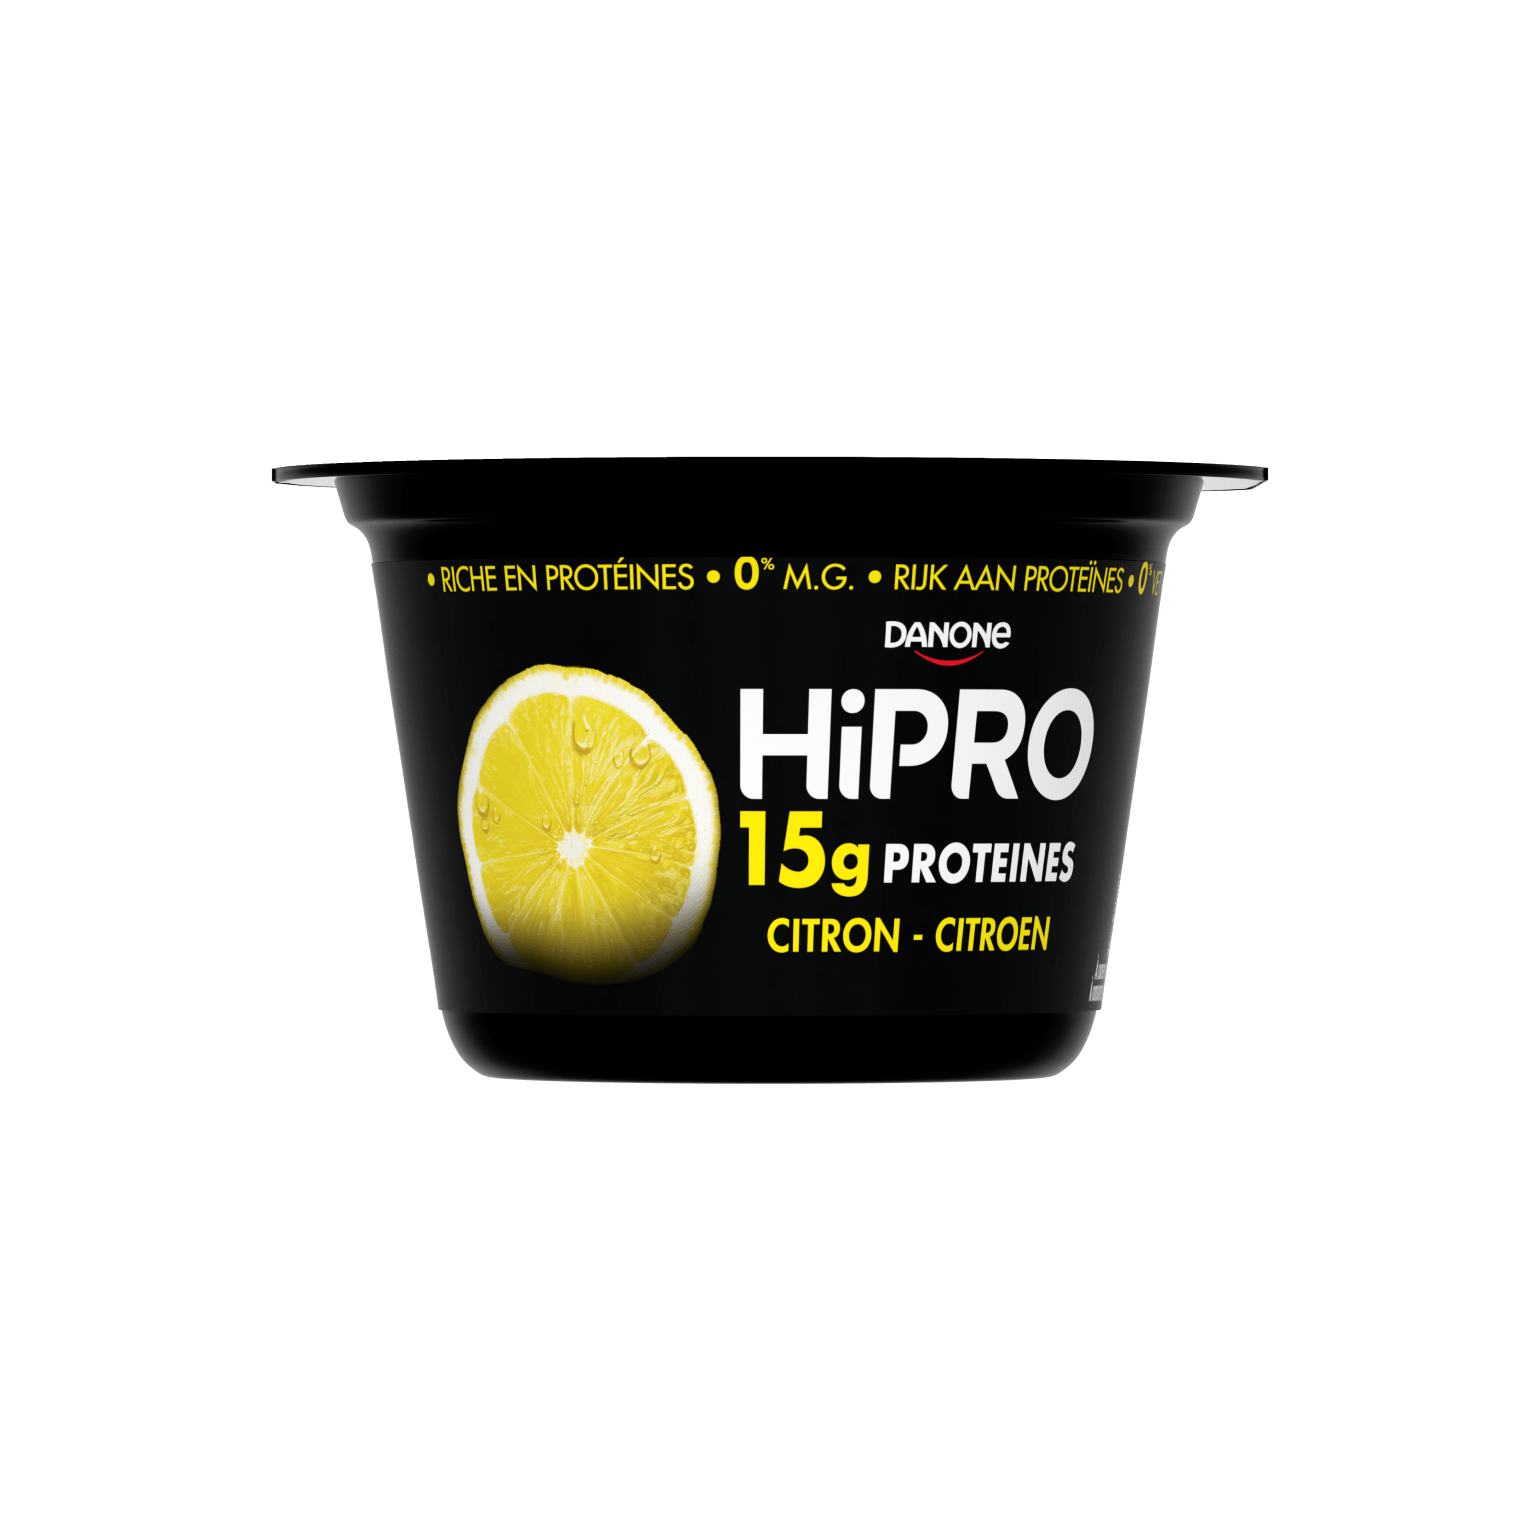 HiPRO citron protéiné 0% mg - Colis de 4 unités de 2x160g